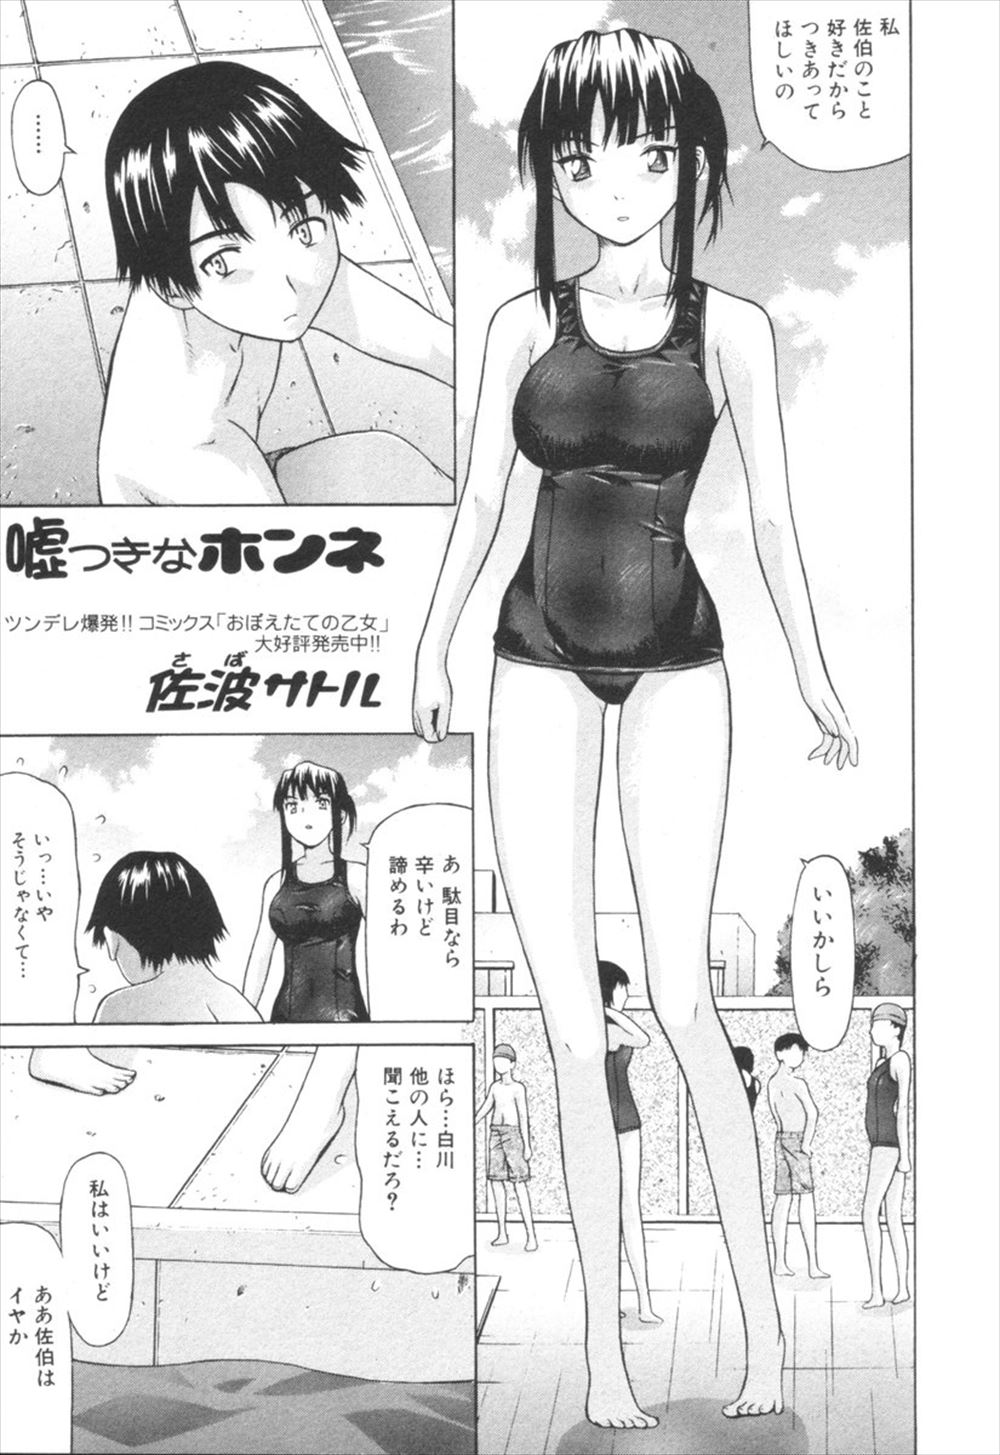 【エロ漫画】巨乳美少女クラスメイトから突然告白されスク水姿で激しい中出し濃厚セックスでビクンビクンかんじまくっちゃうｗｗｗ